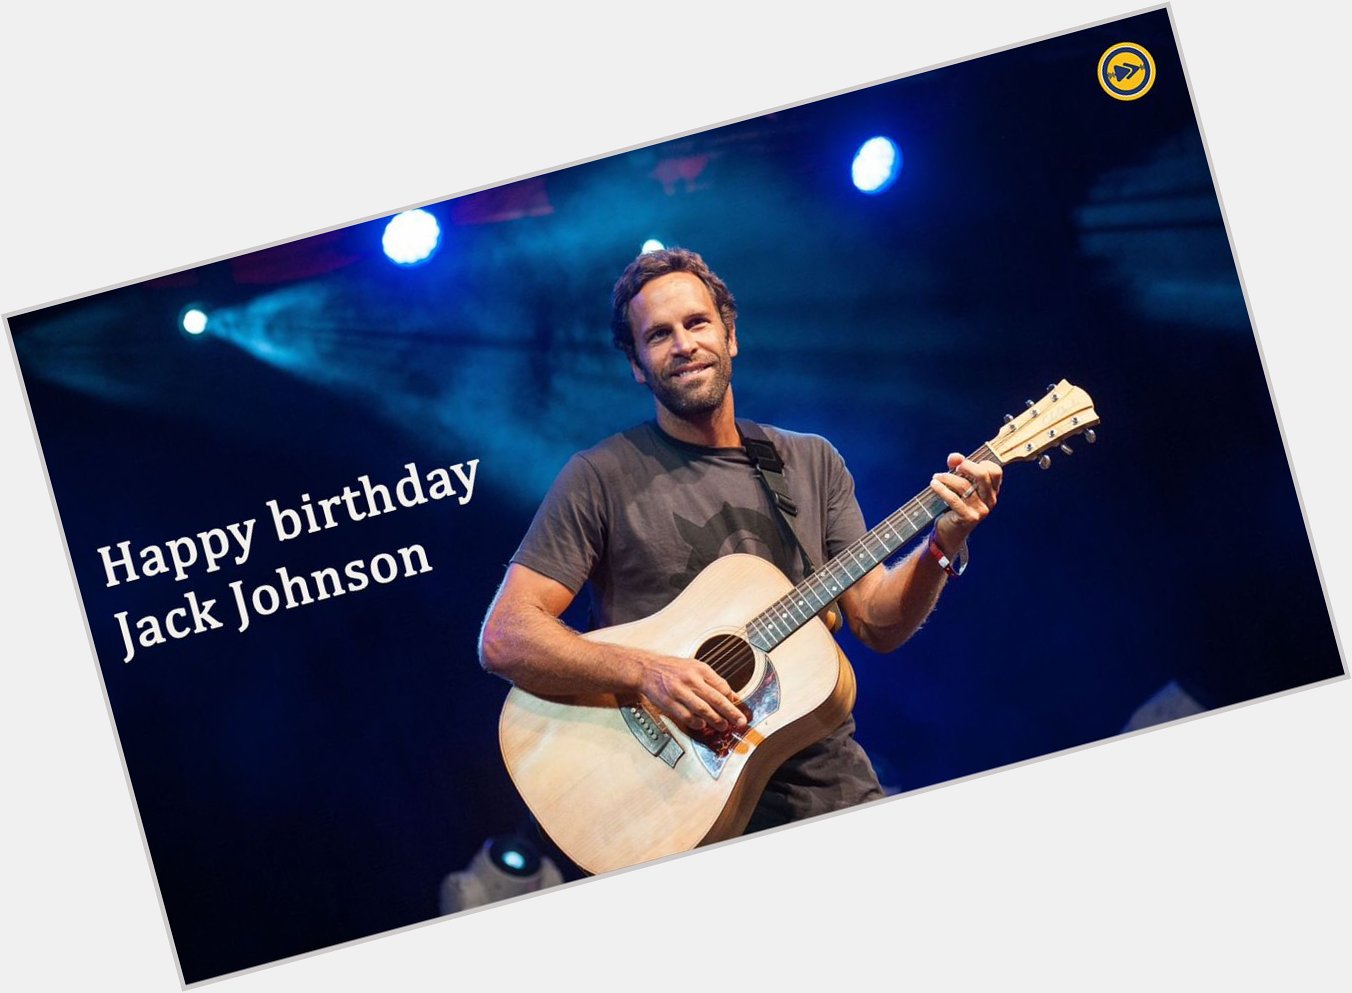 Happy birthday to Jack Johnson!!!  